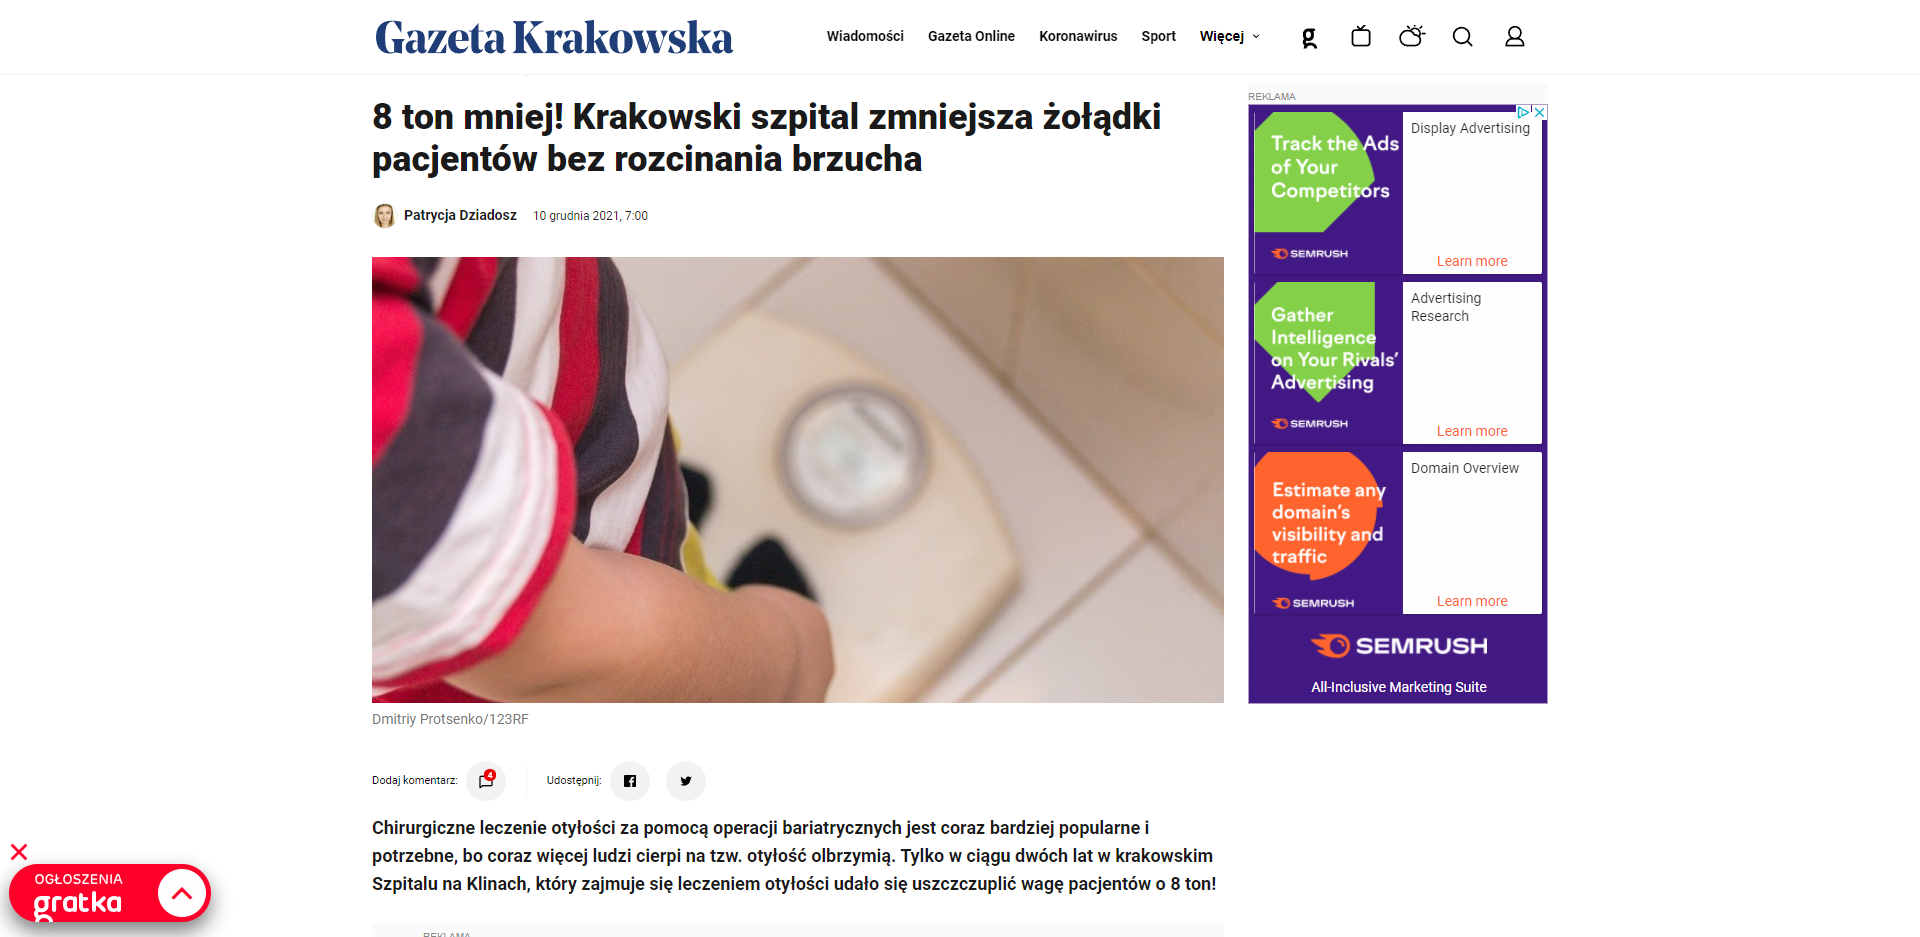 ton mniej krakowski szpital zmniejsza zoladki pacjentow bez rozcinania brzucha